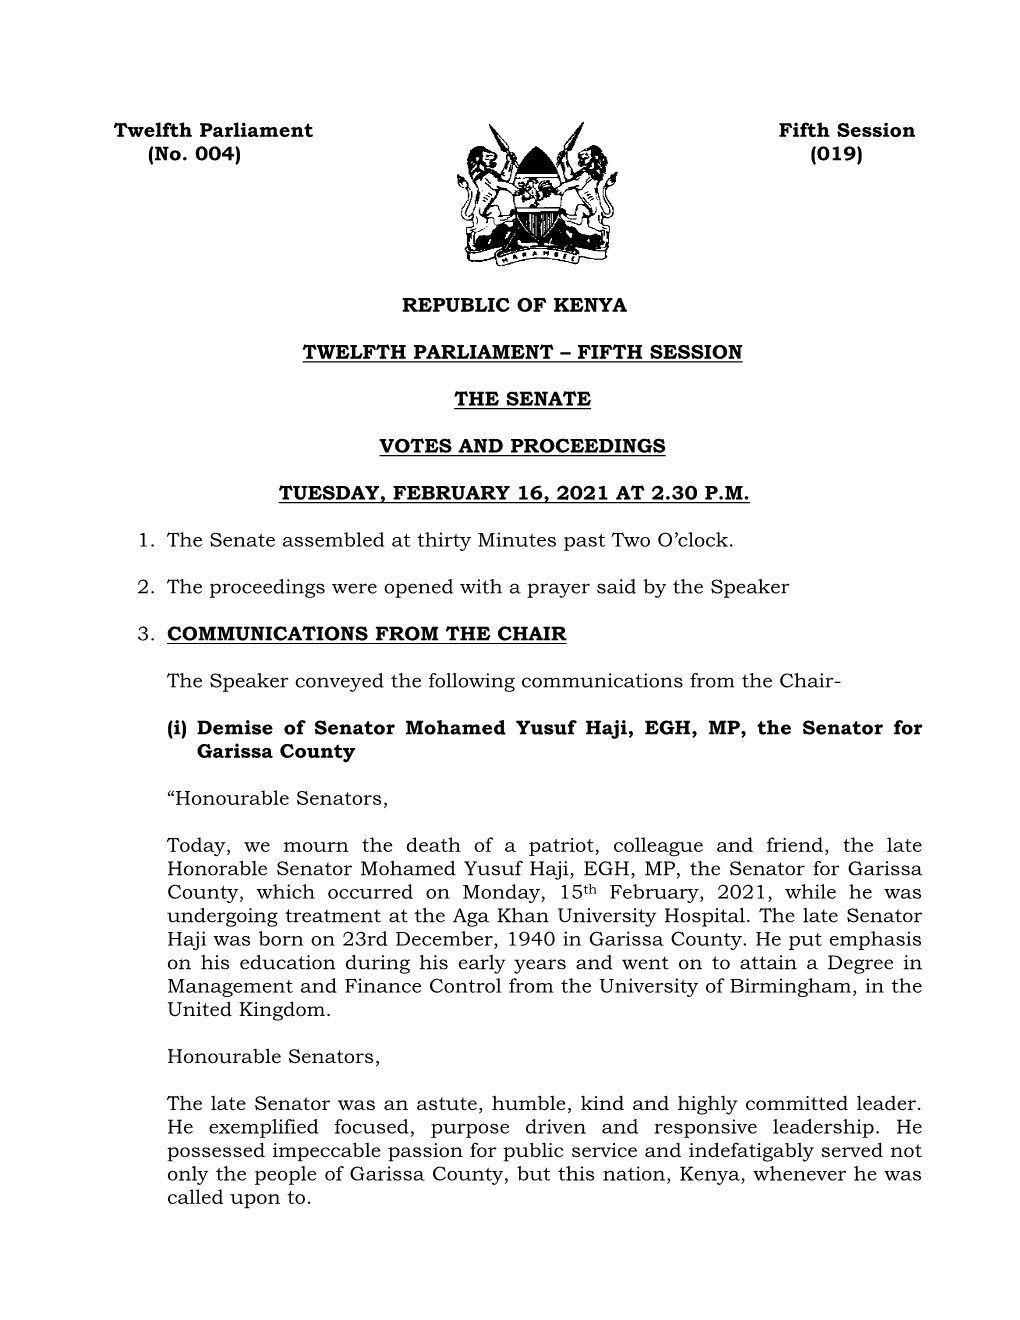 Twelfth Parliament Fifth Session (No. 004) (019) REPUBLIC of KENYA